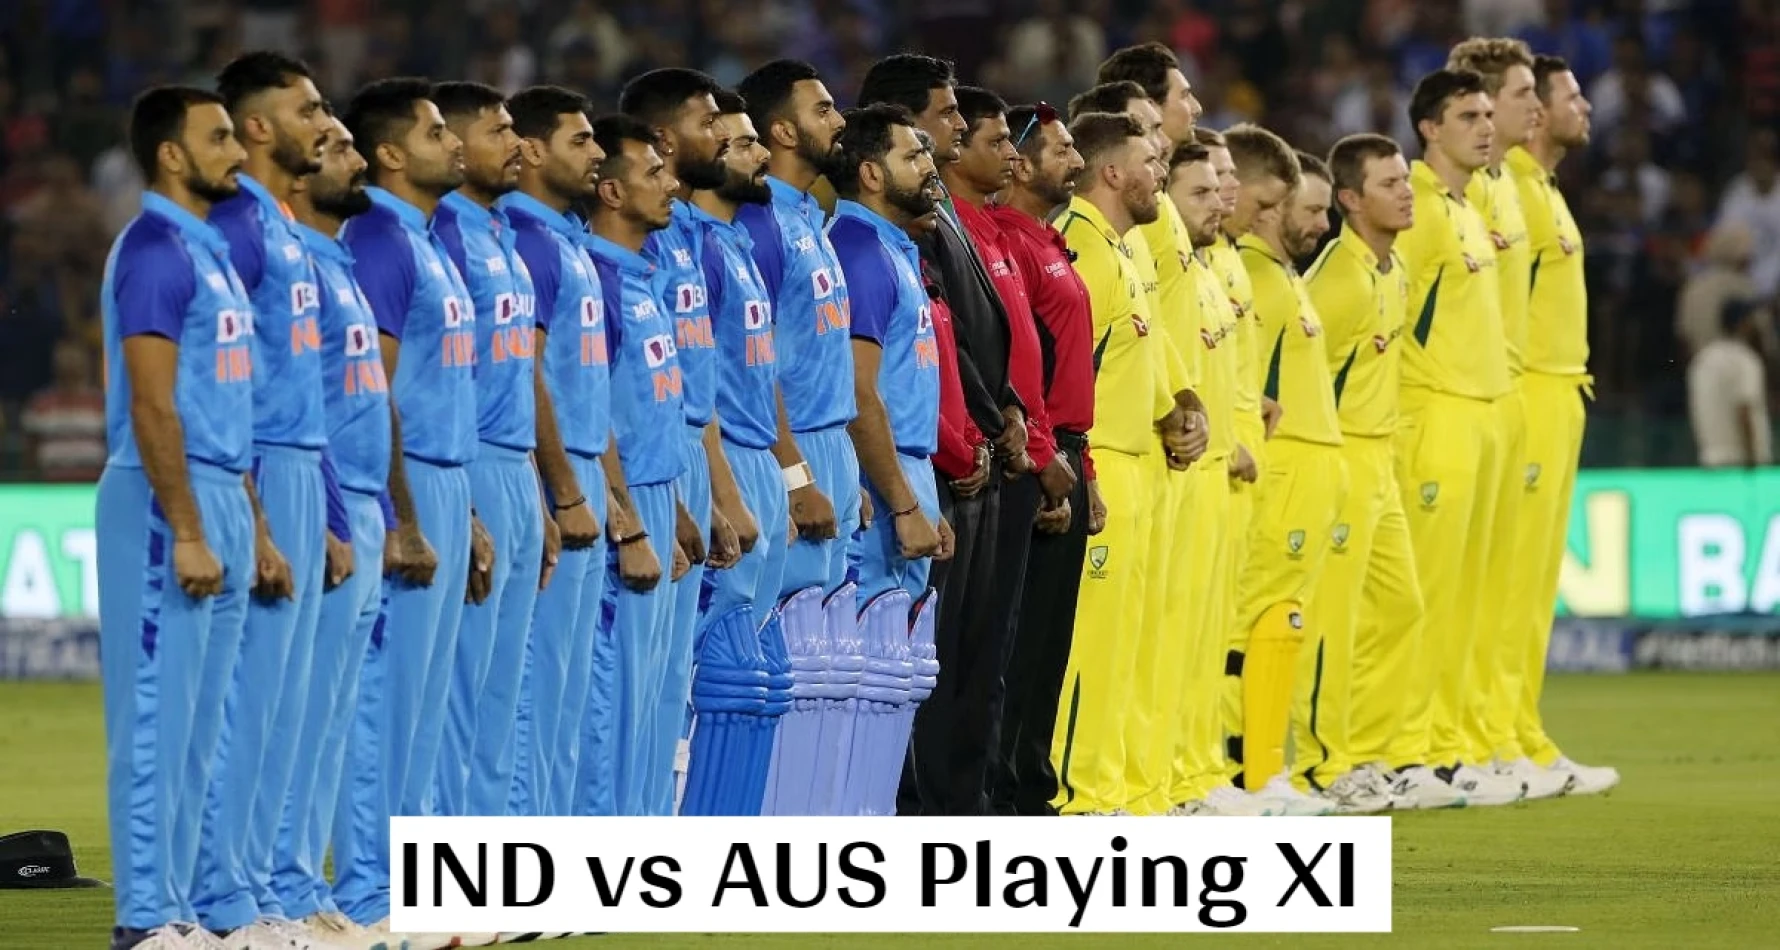 IND vs AUS टी20 सीरीज के लिए दोनों टीमों की मजबूत 15 सदस्यीय टीम का हुआ ऐलान, सूर्यकुमार यादव को बनाया गया भारत का कप्तान